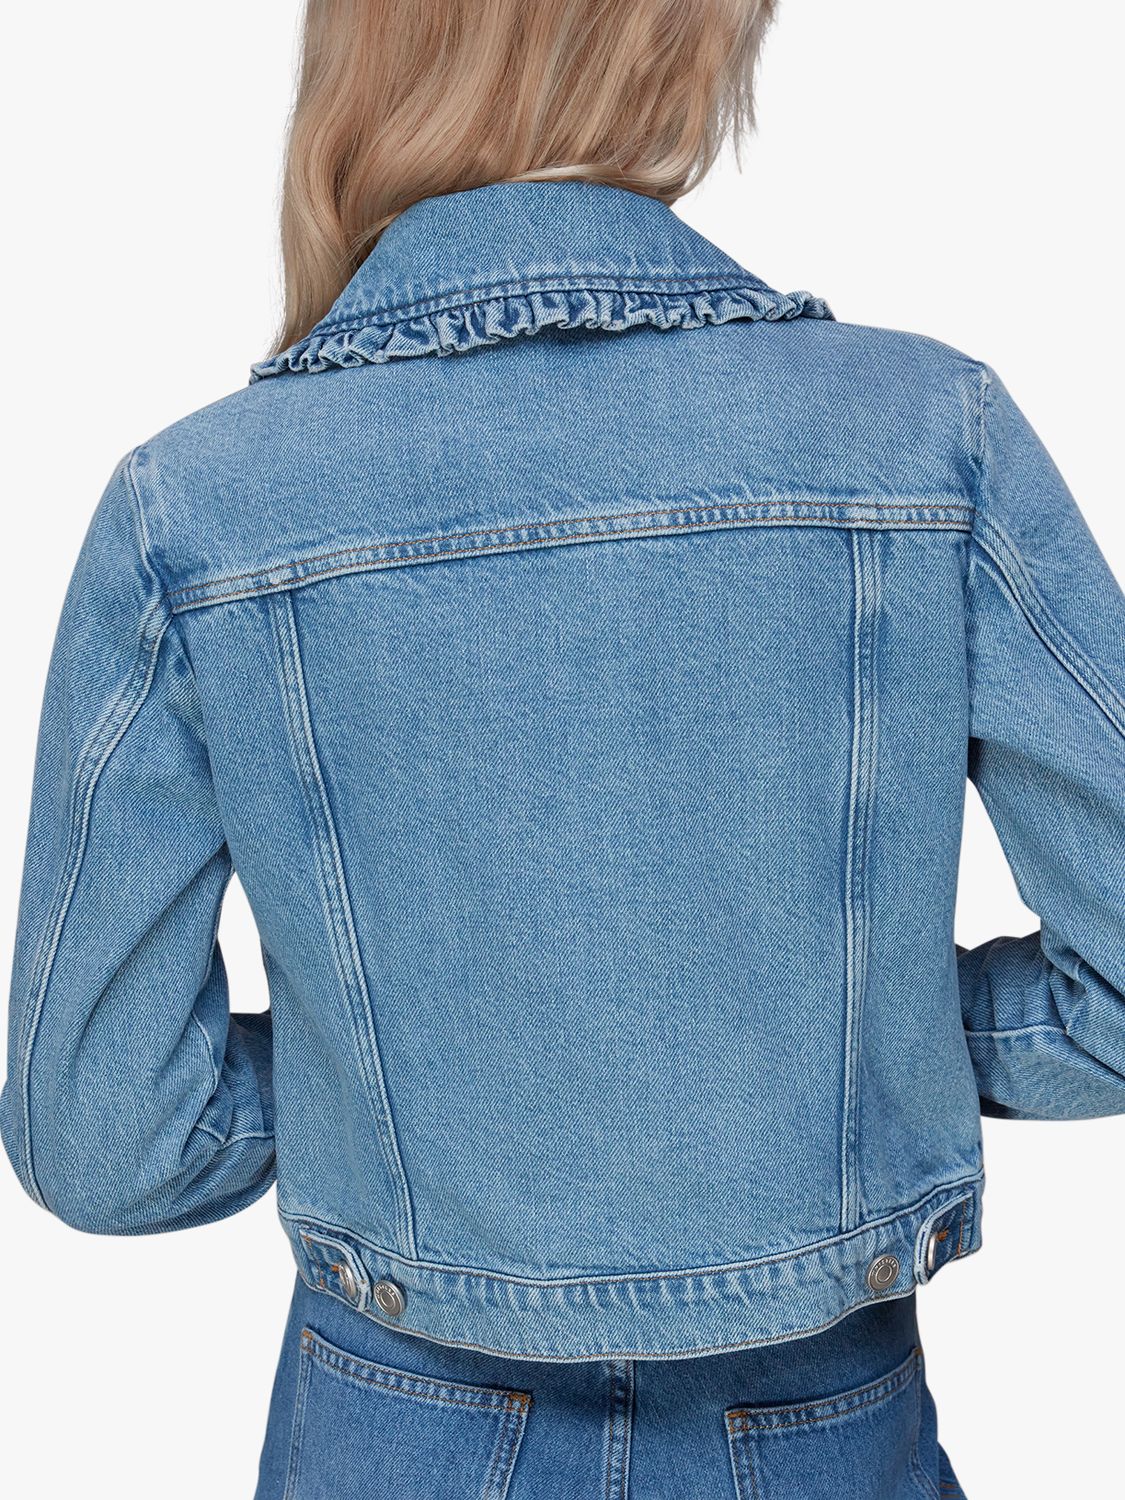 Whistles Frill Collar Detail Denim Jacket, Blue at John Lewis & Partners